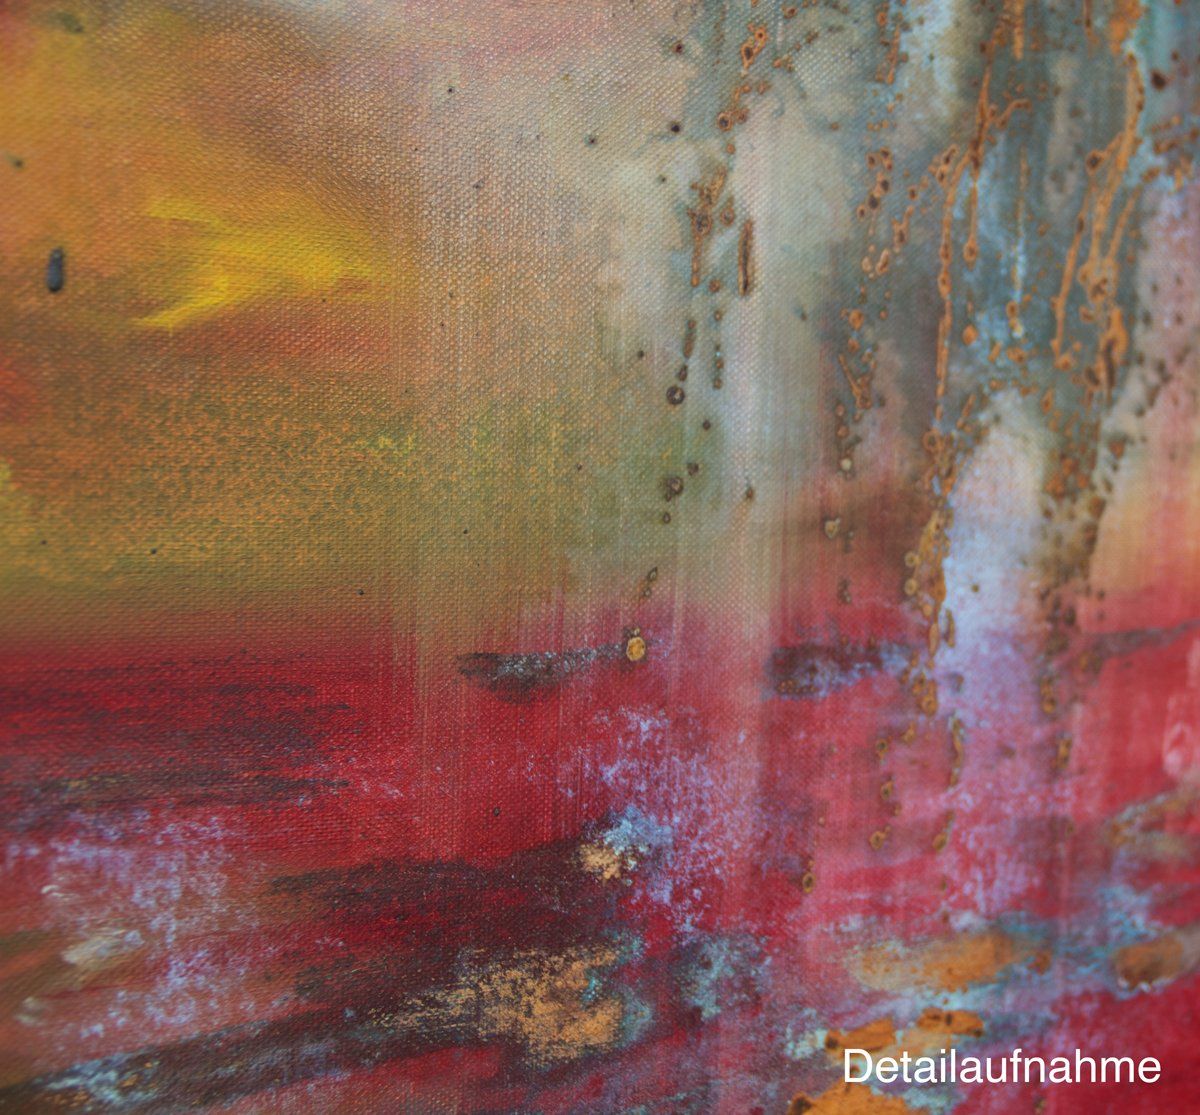 Landschaft in Rost und Rot. Gemälde „Neva“ Maße: 80 x 100 cm, Tiefe 4,5 cm  Material: Acryl, Rost, blaue Patina auf Eisen-Grundierung, Firnis  Malgrund: Leinwand auf Keilrahmen